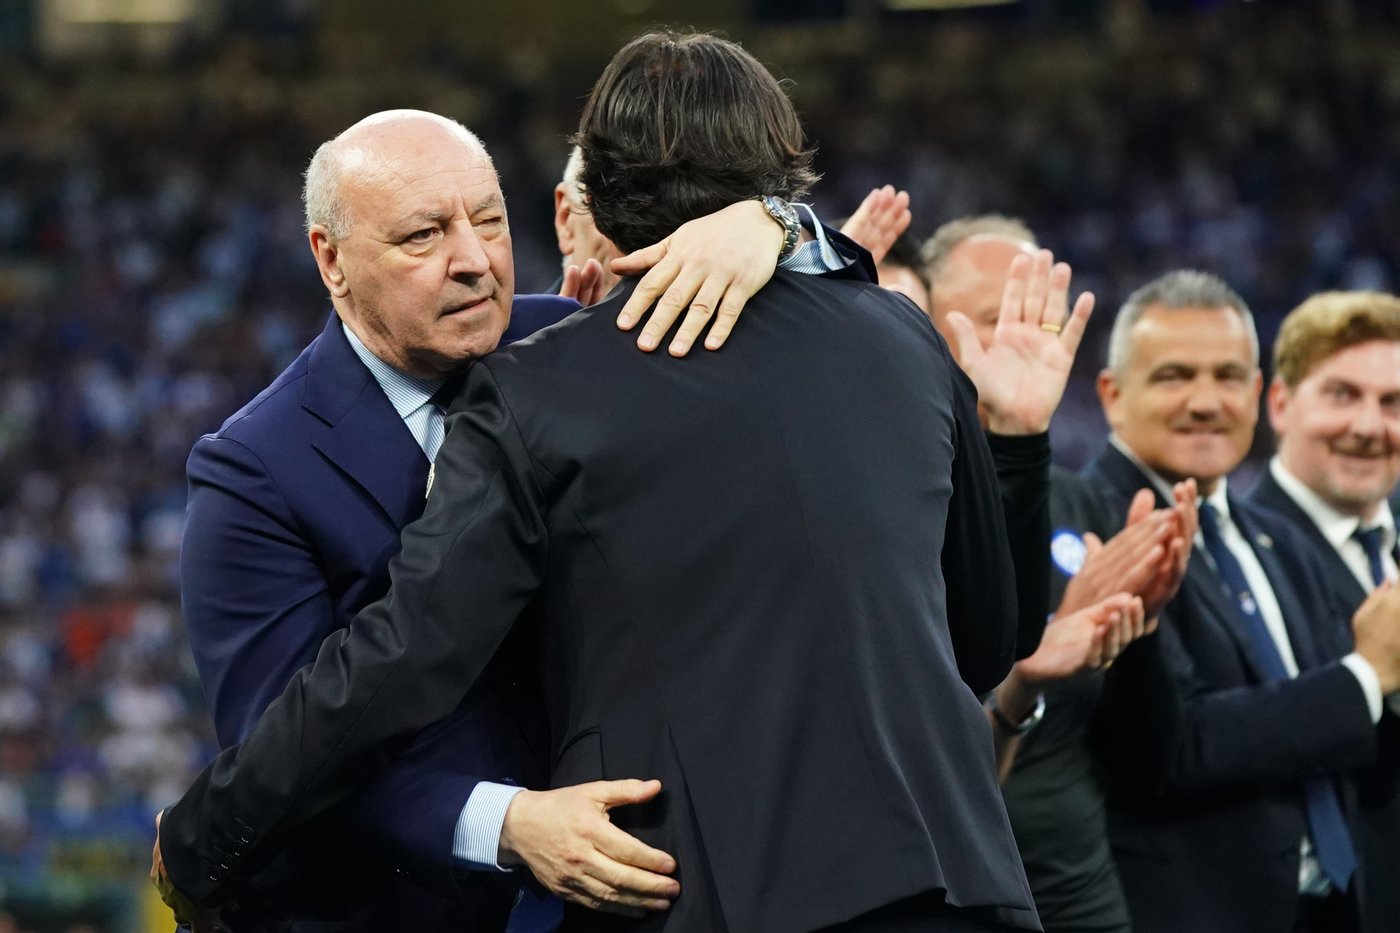 L'amministratore delegato dell'Inter Giuseppe Marotta abbraccia Simone Inzaghi alla consegna dello scudetto vinto